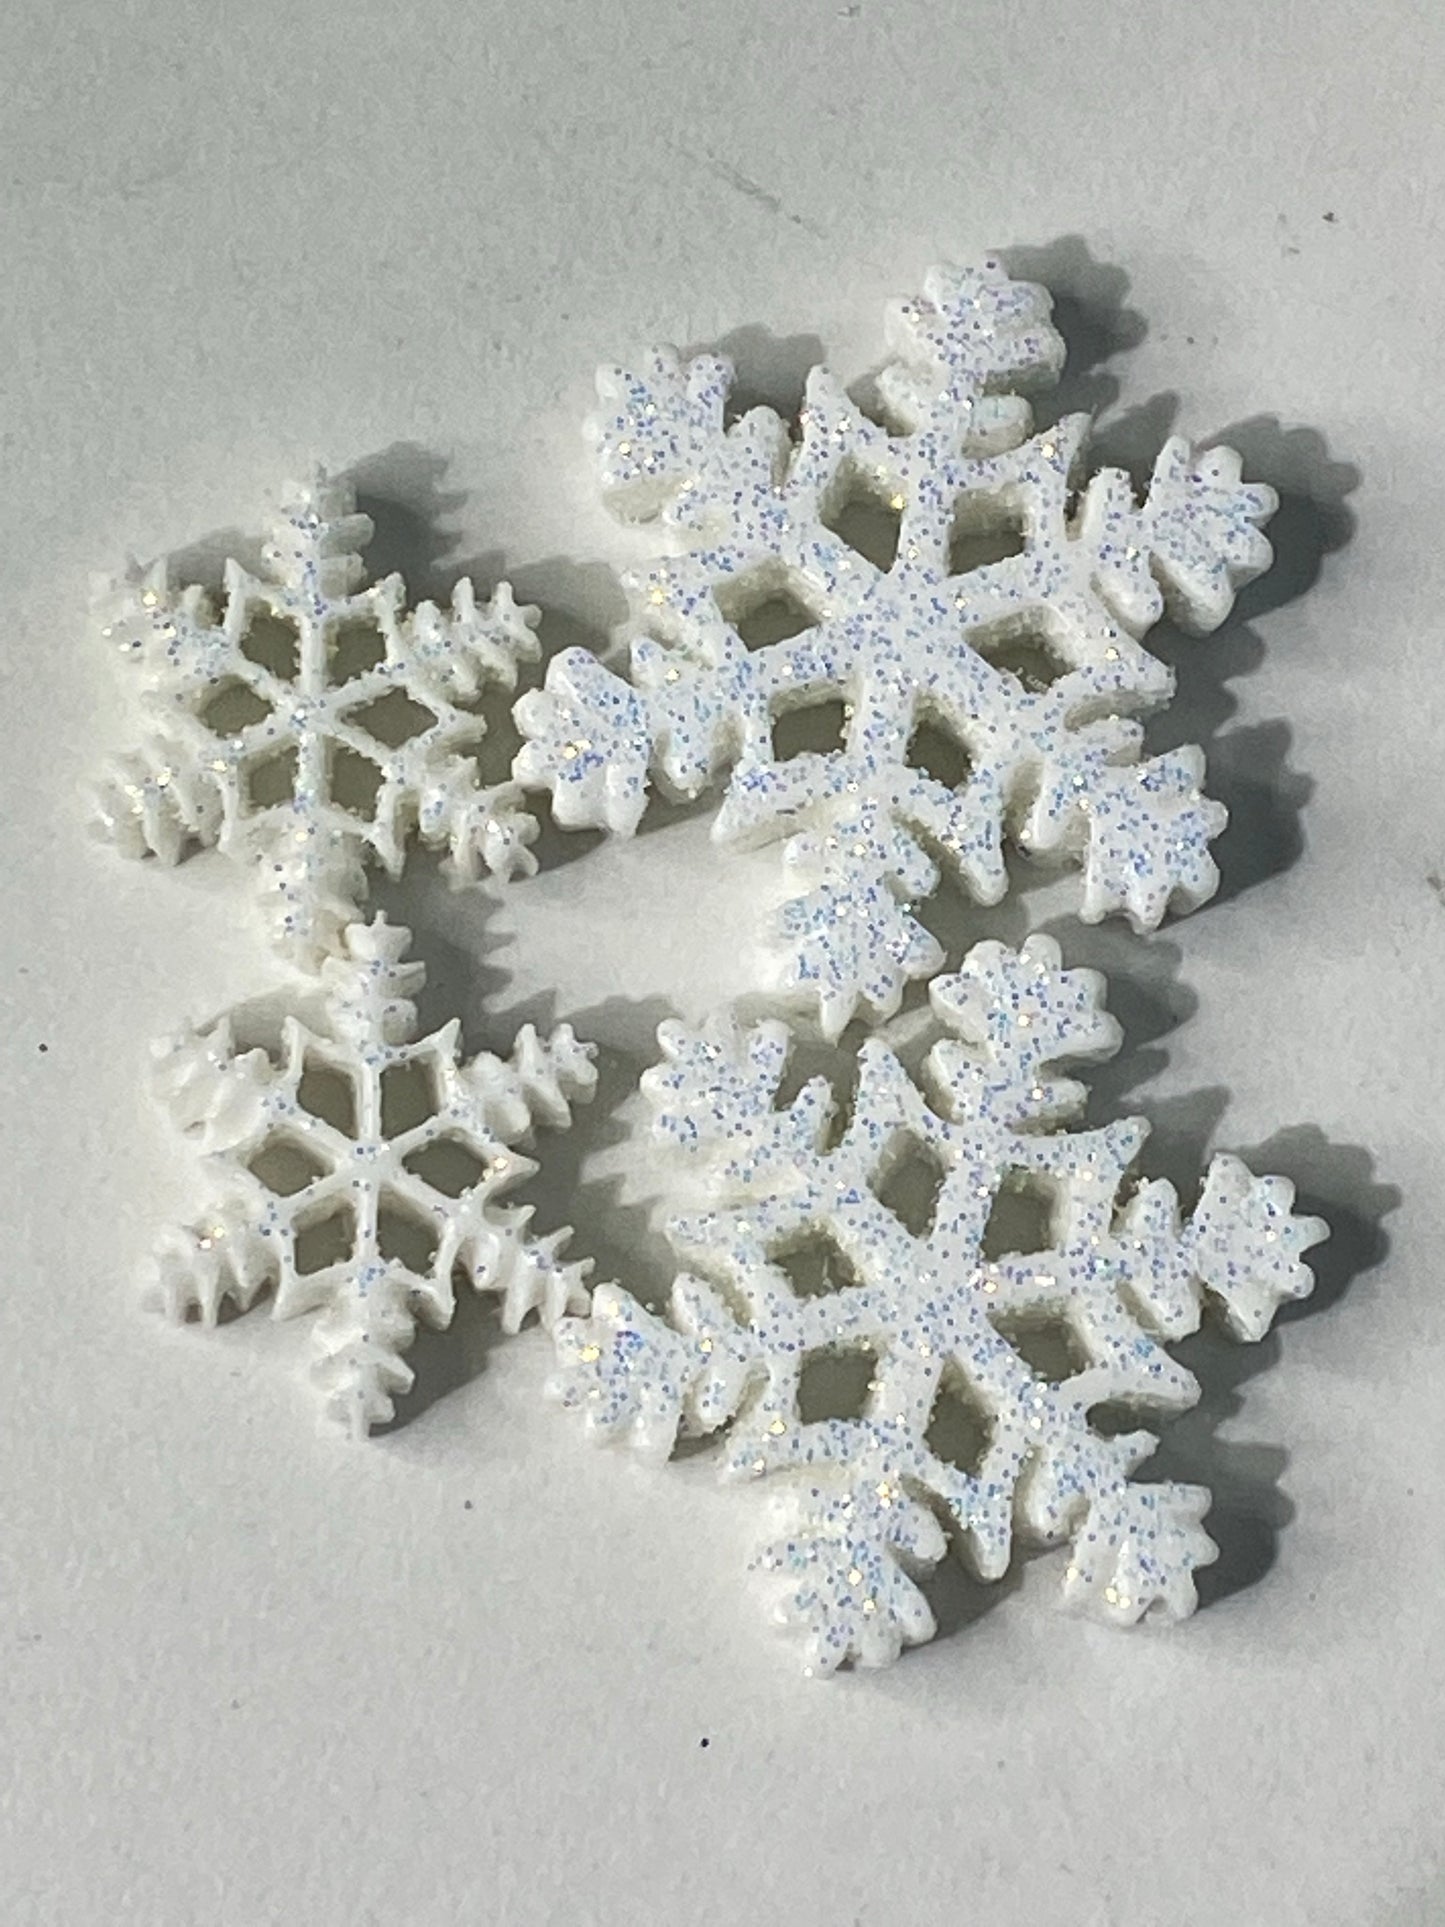 (2) snowflakes